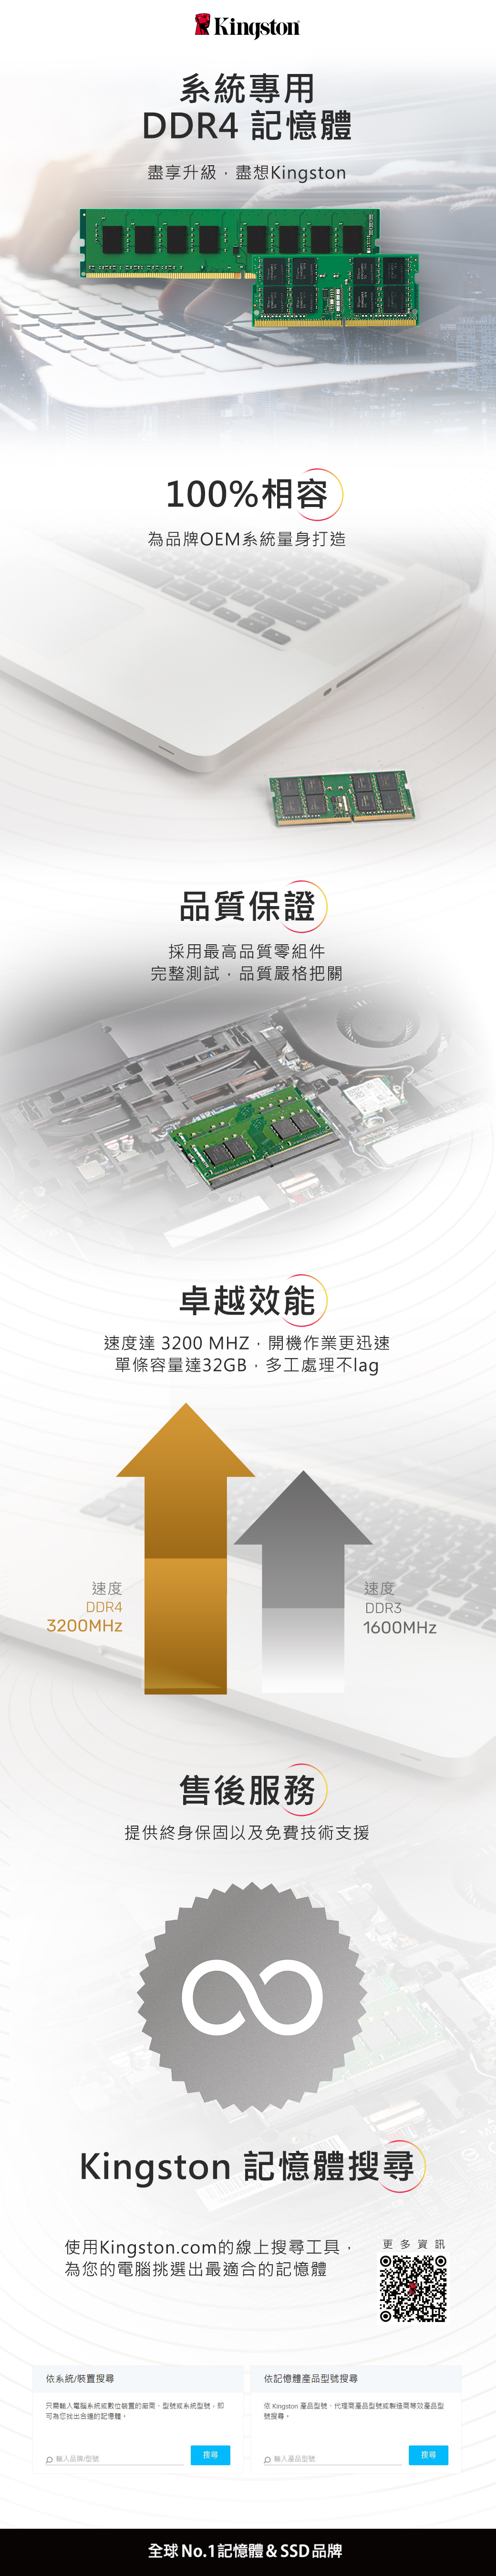 Kingston系統專用DDR4 記憶體盡享升級盡想Kingston100%相容為品牌OEM系統量身打造品質保證採用最高品質零組件完整測試品質嚴格把關卓越效能速度達 3200 MHZ開機作業更迅速單條容量達32GB,多工處理不速度速度DDR43200MHzDDR31600MHz售後服務提供終身保固以及免費技術支援Kingston 記憶體搜尋使用Kingston.com的線上搜尋工具, 更多資訊為您的電腦挑選出最適合的記憶體依系統/裝置搜尋依記憶體產品型號搜尋只需輸入電腦系統或數位裝置的廠商型號或系統型號,即可為您找出合適的記憶體。依 Kingston 產品型號、代理商產品型號或製造商等效產品型號搜尋。 輸入品牌/型號搜尋 輸入產品型號全球No.1記憶體&SSD品牌搜尋